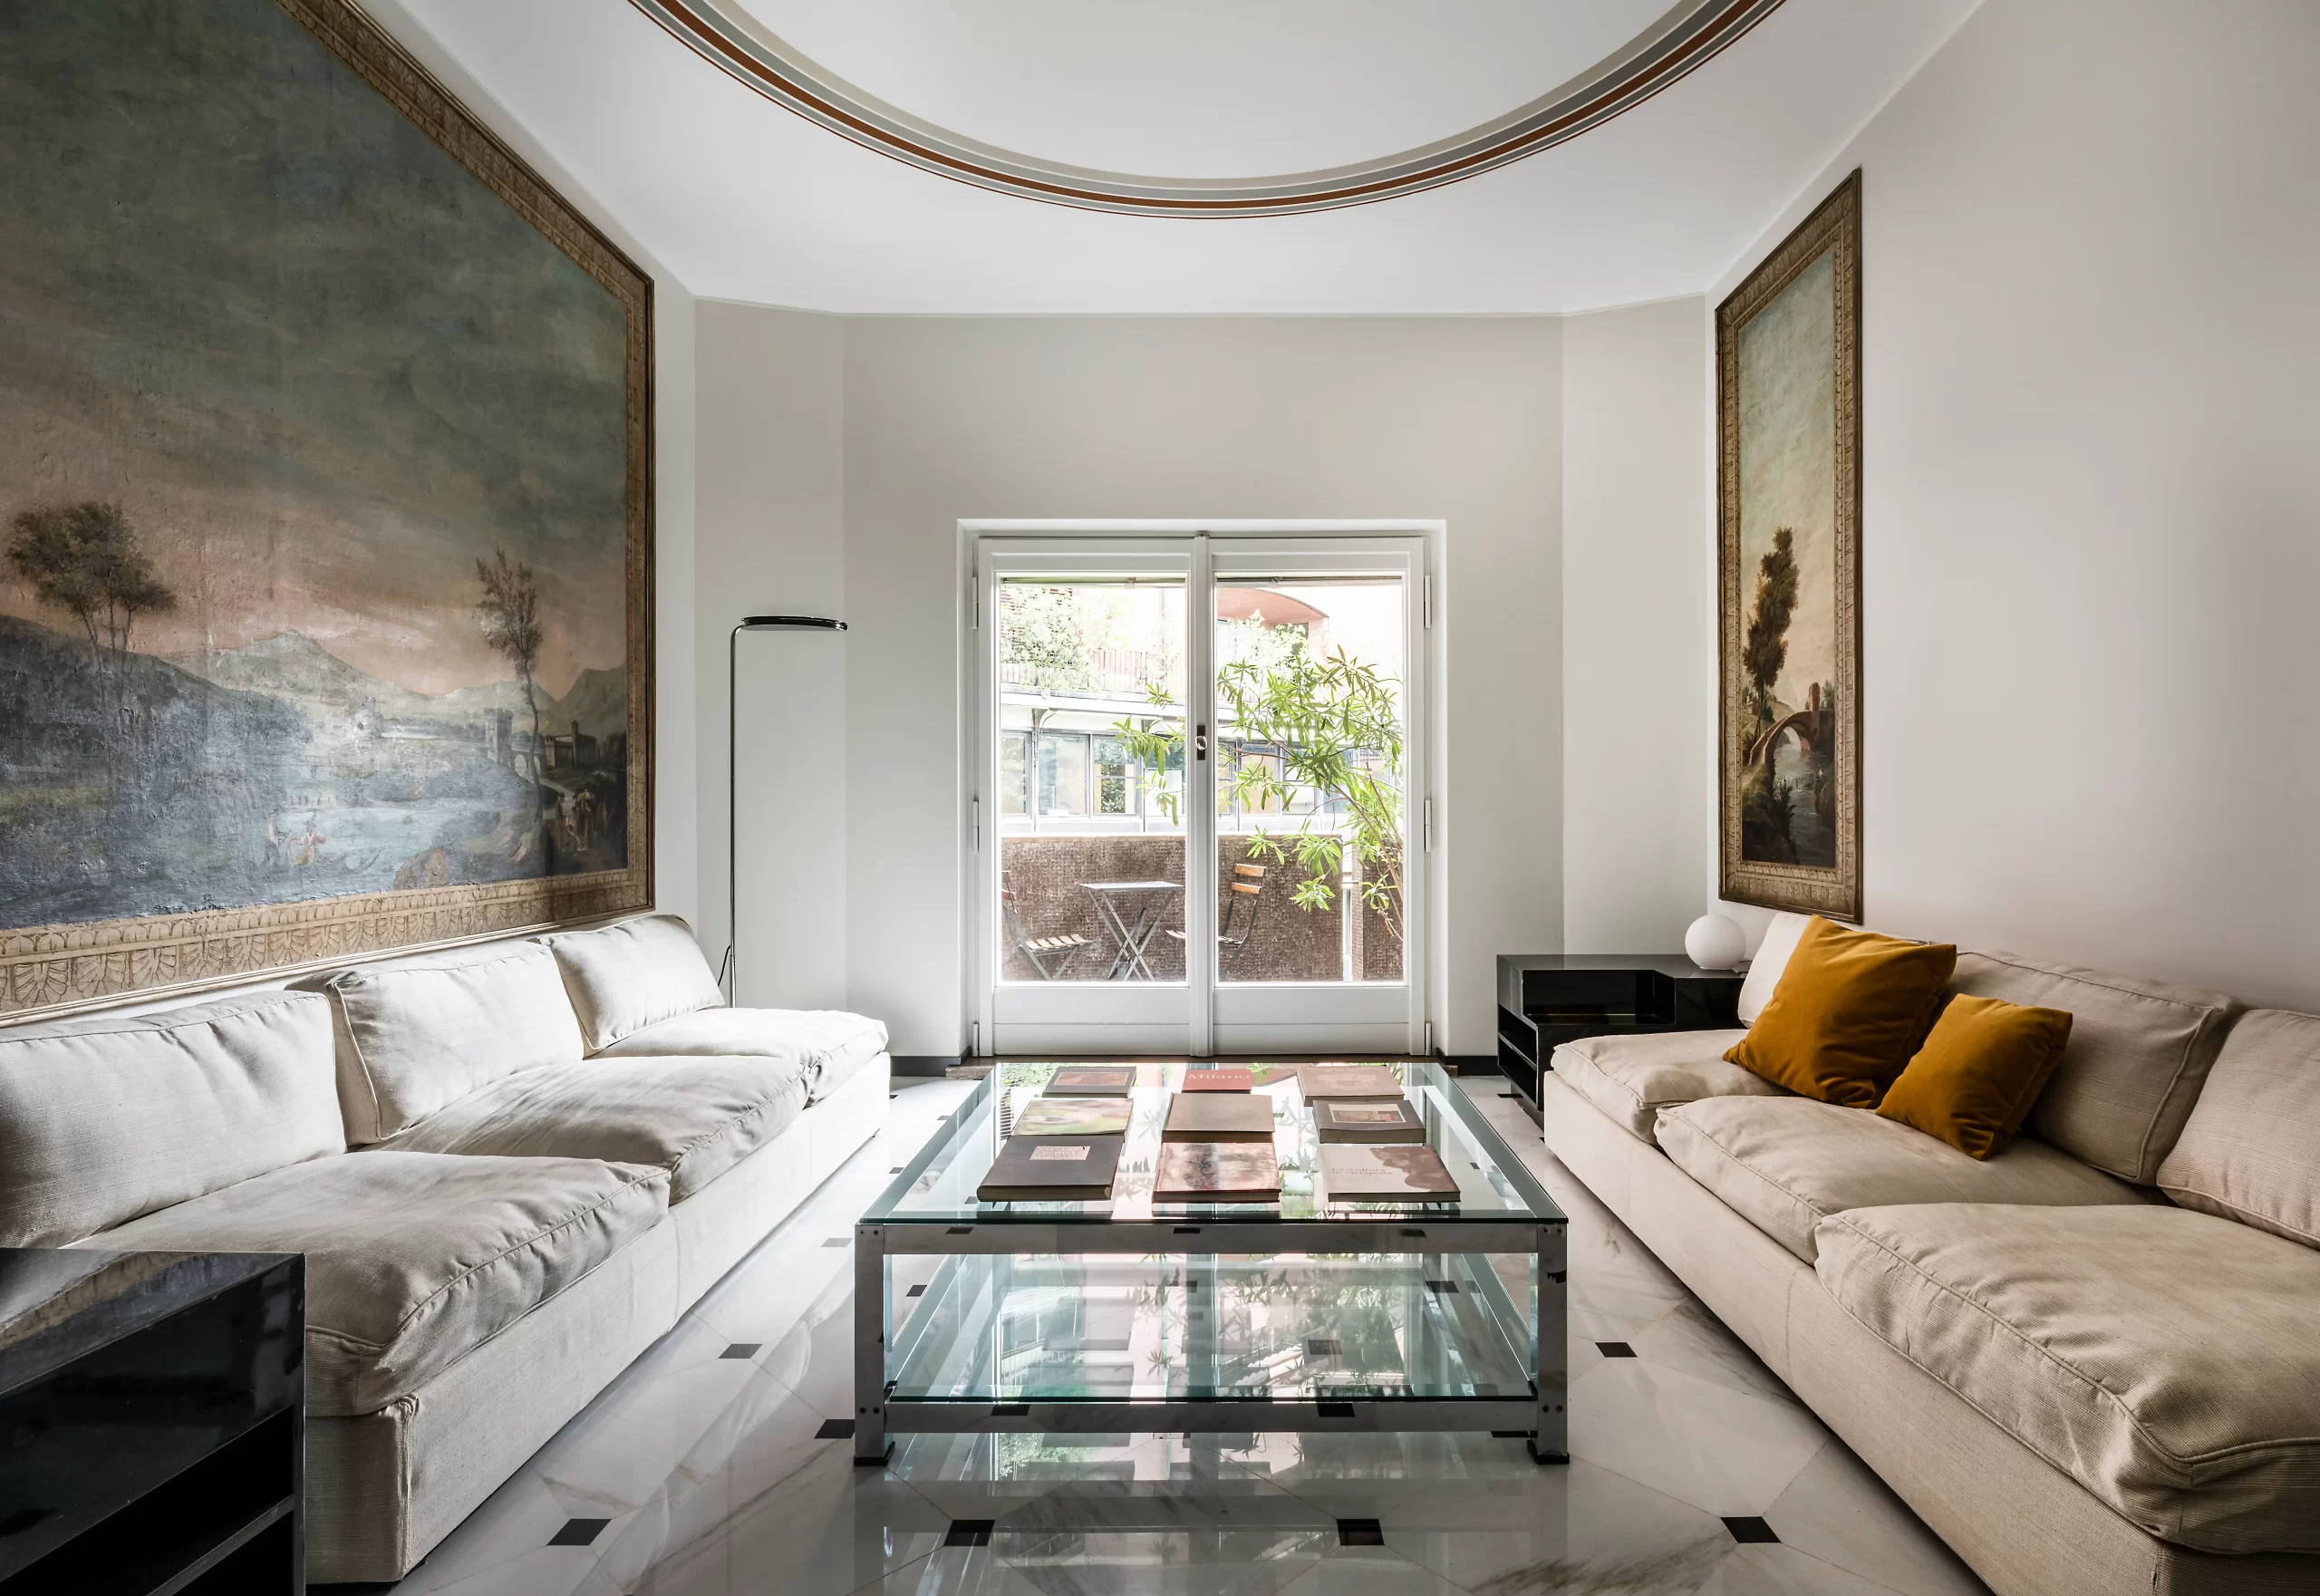 The Modernist living room